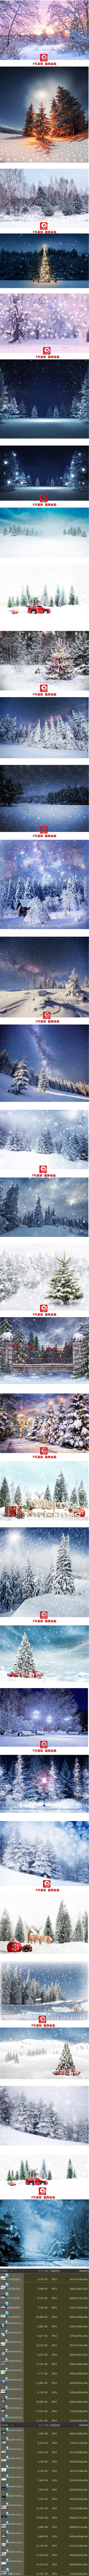 Bg-3162 Hình Nền Mùa đông Tuyết Rơi Rừng Cây đón Giáng Sinh (2)